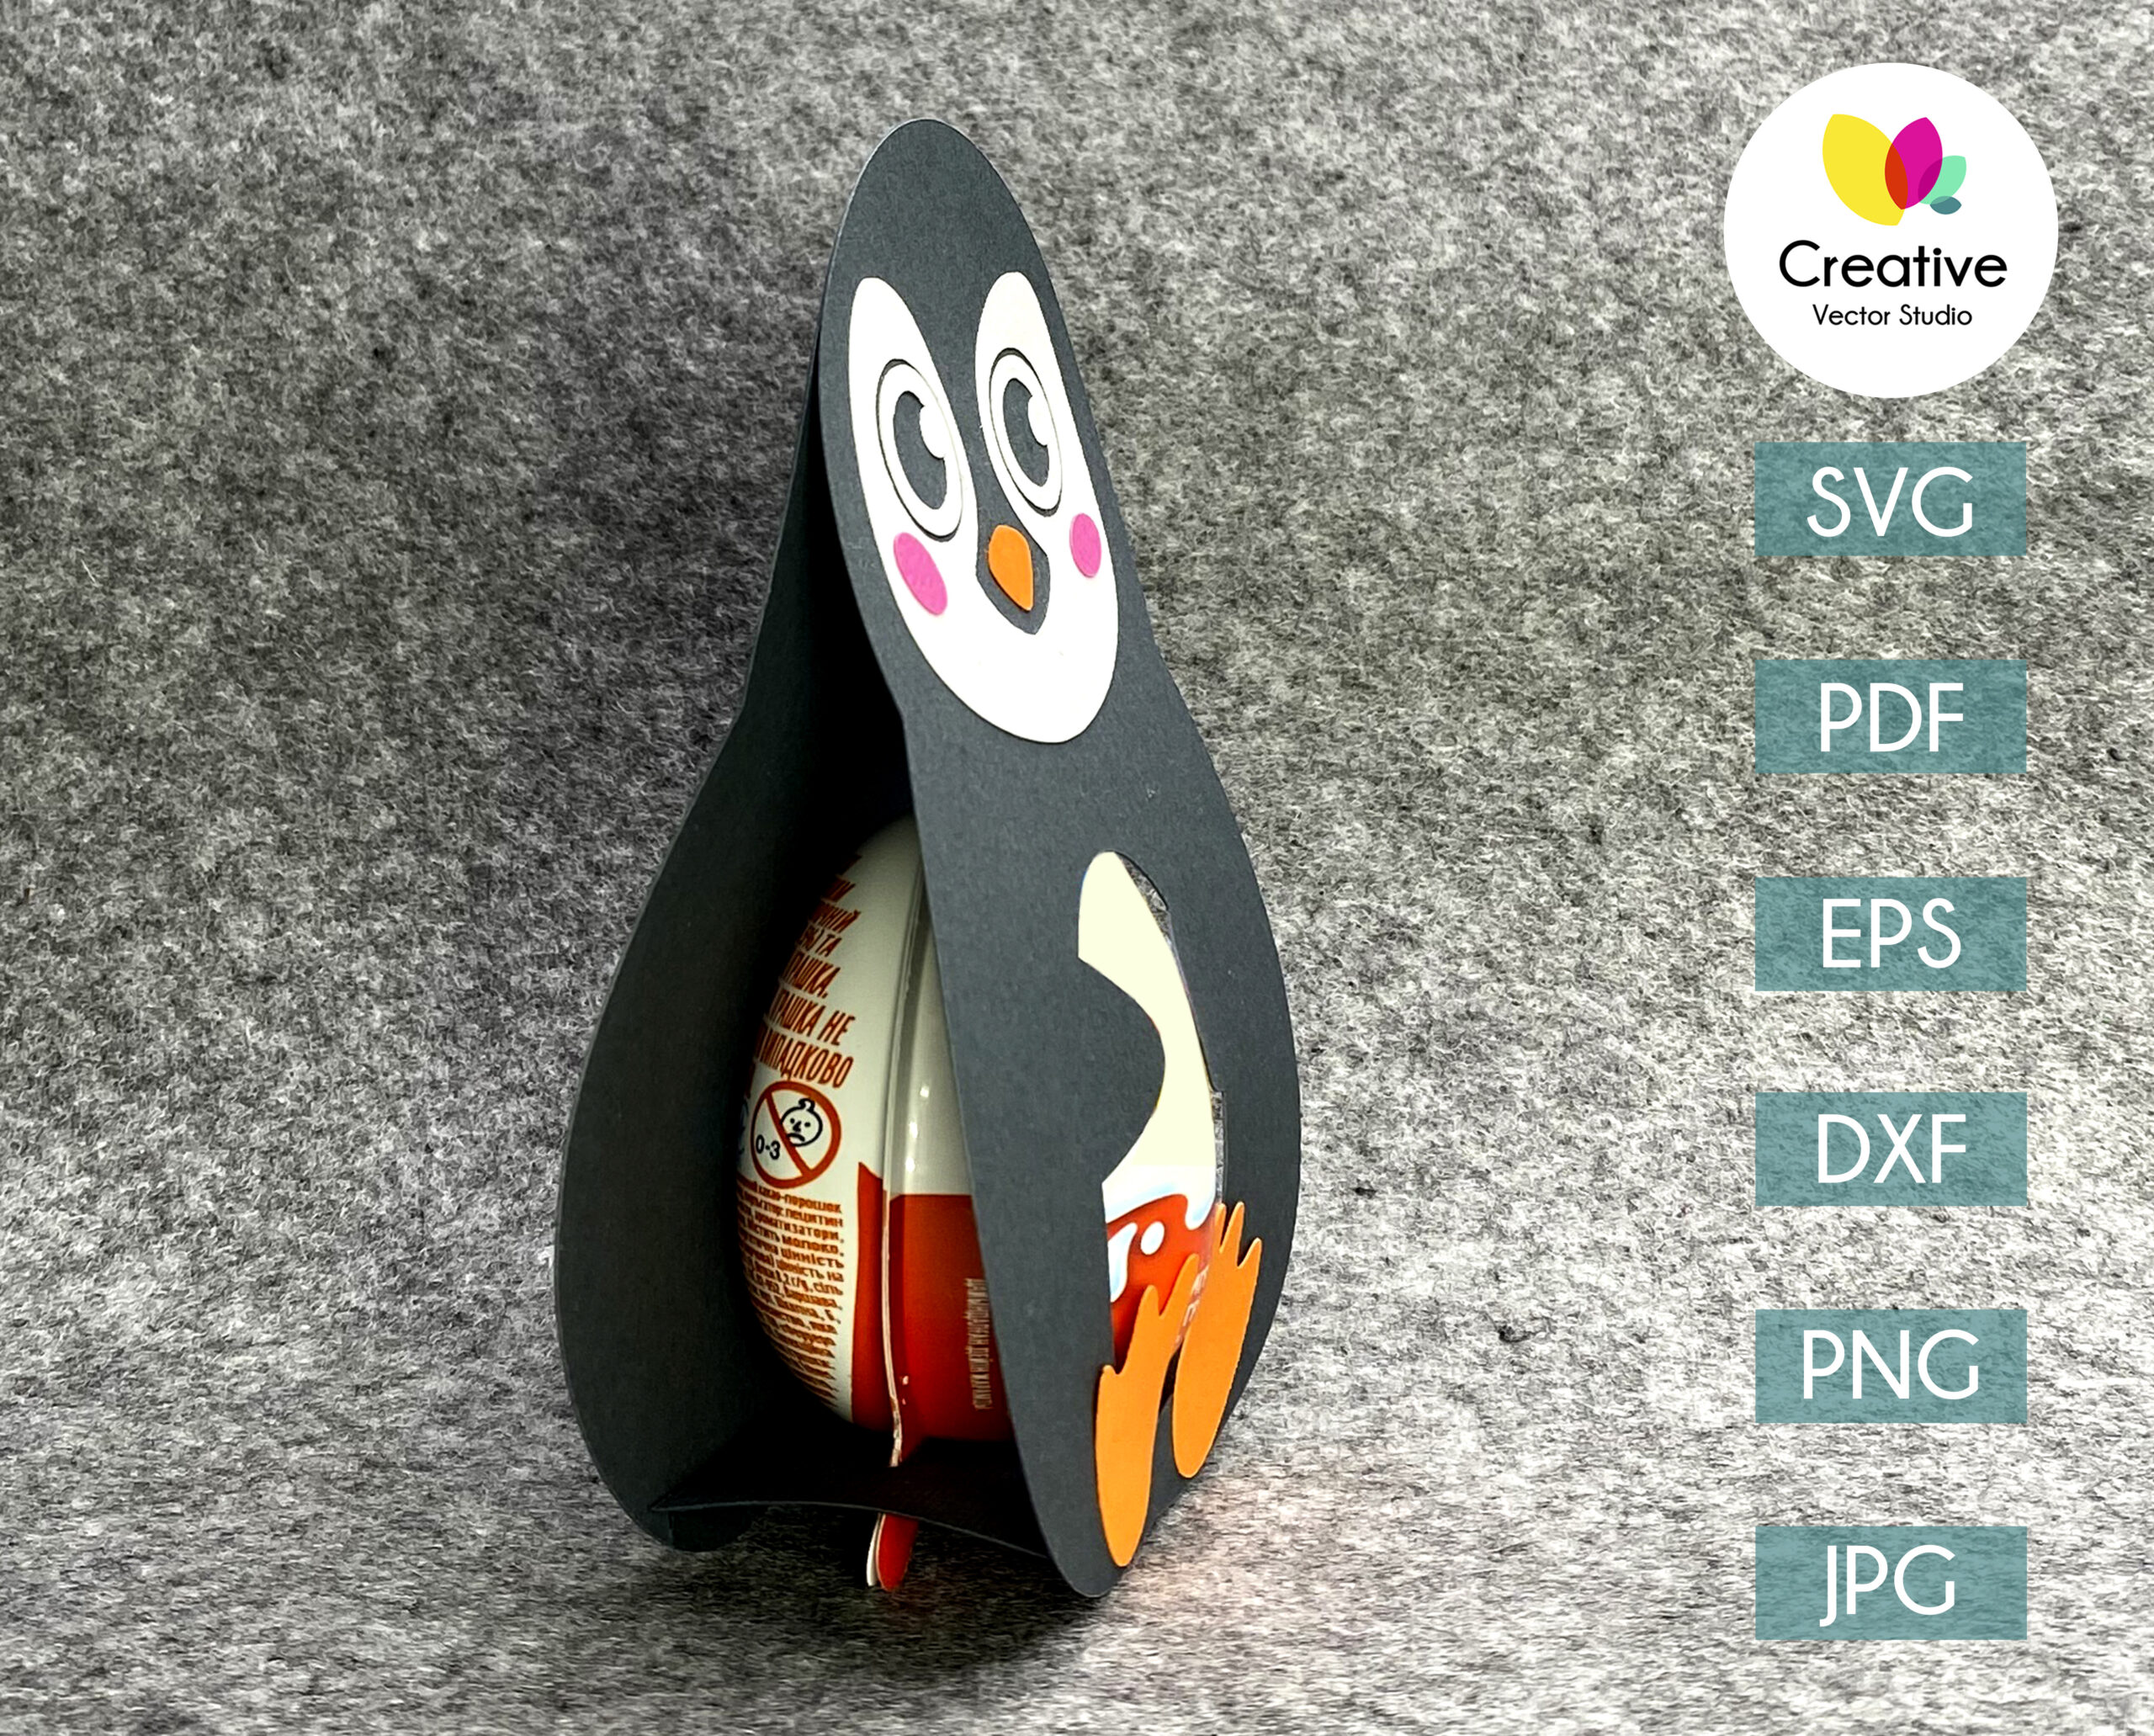 Animal egg holder designs Duck, Rabbit, Penguin and Lamb